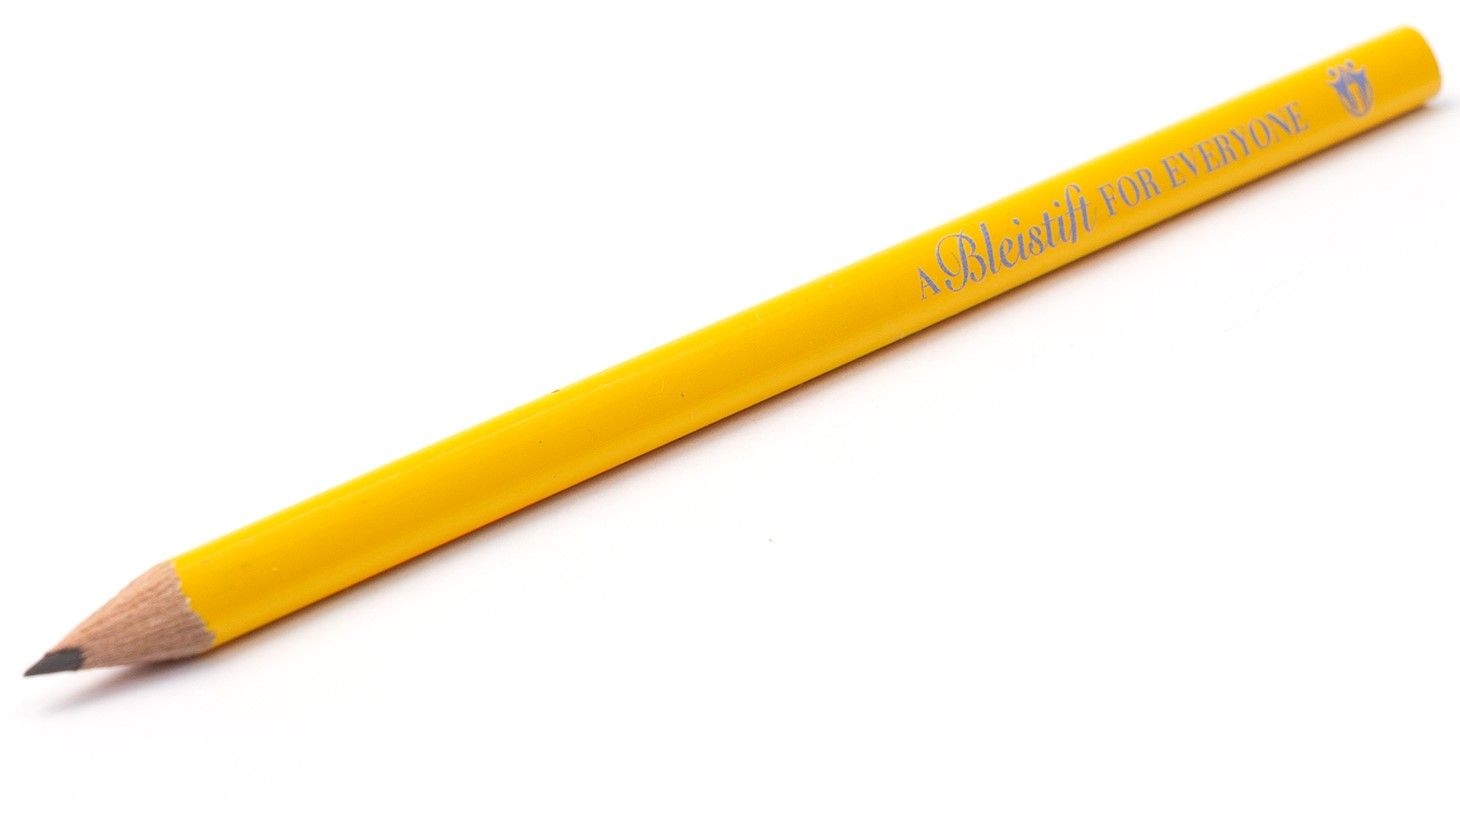 DIXON Bleistifte bis zu 288 Stk HB 2 Schreiben Stifte Malen Zeichnen Blei Stift 